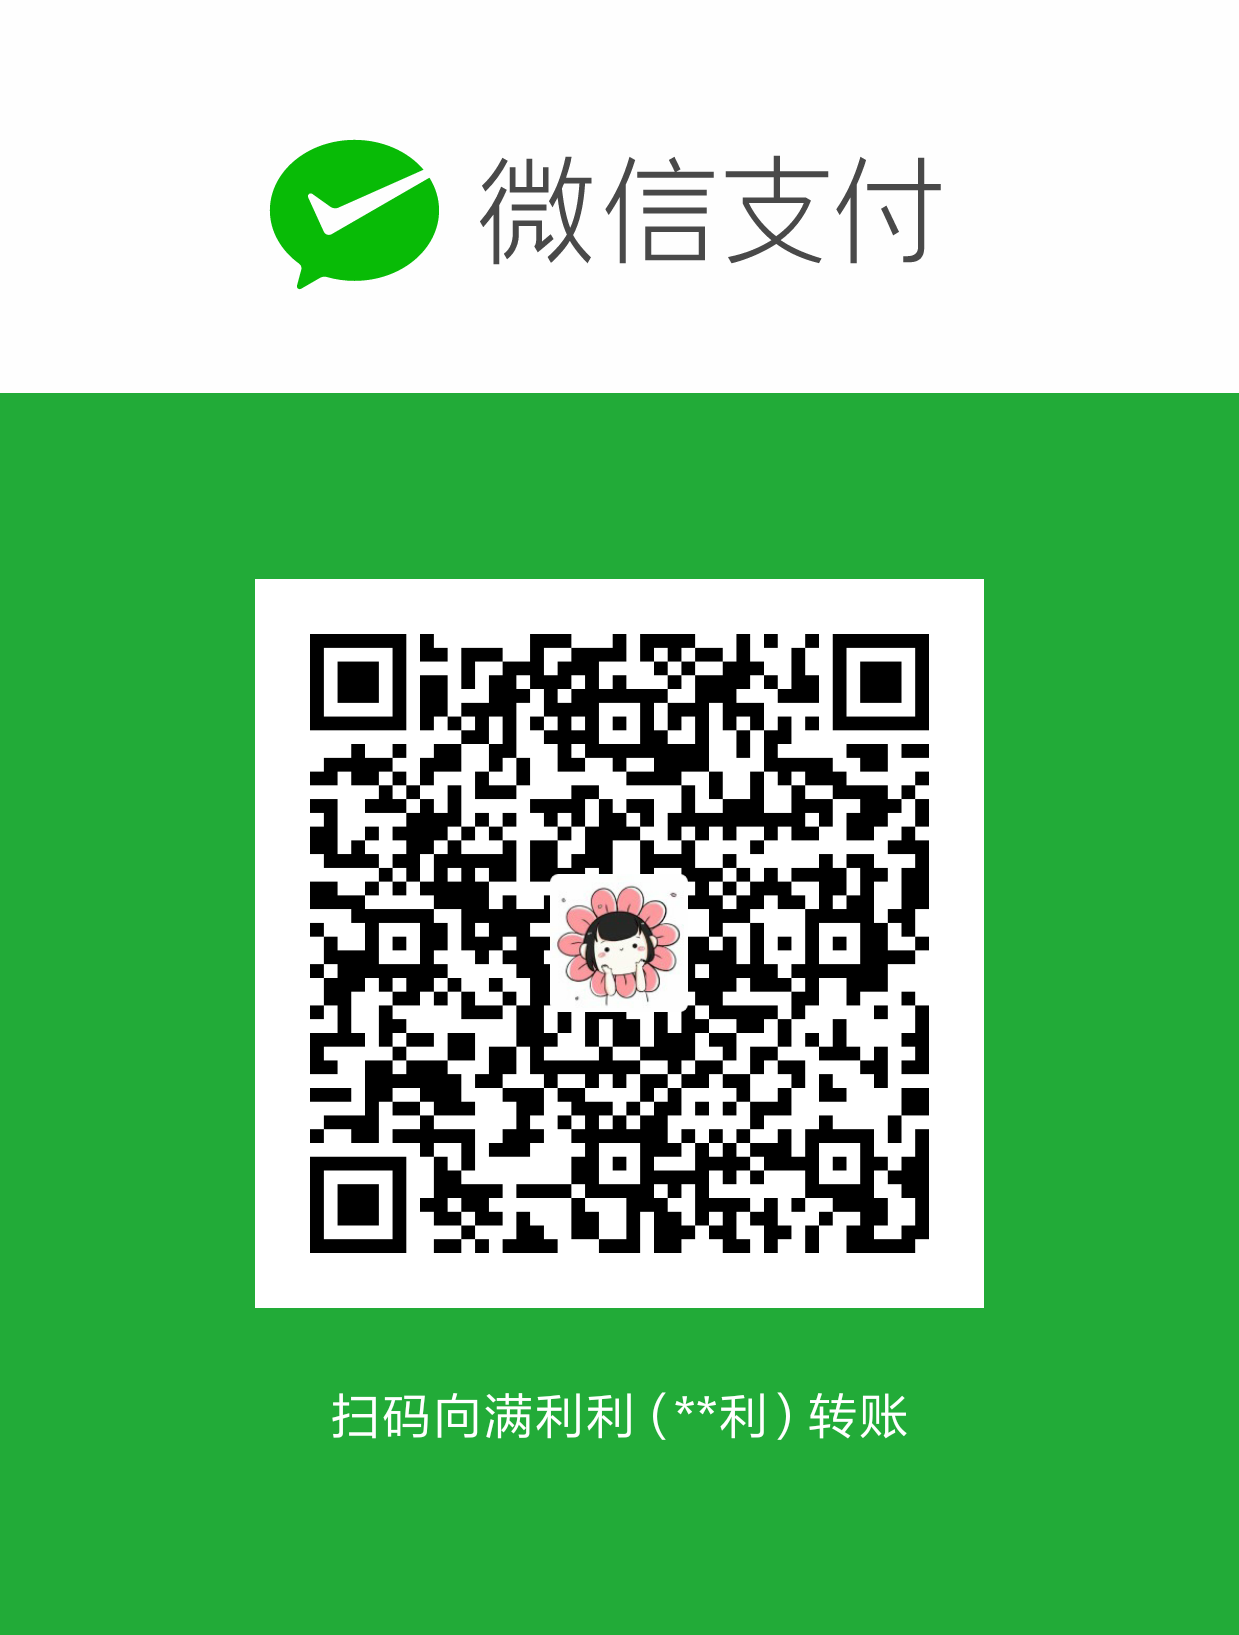 满利利 WeChat Pay